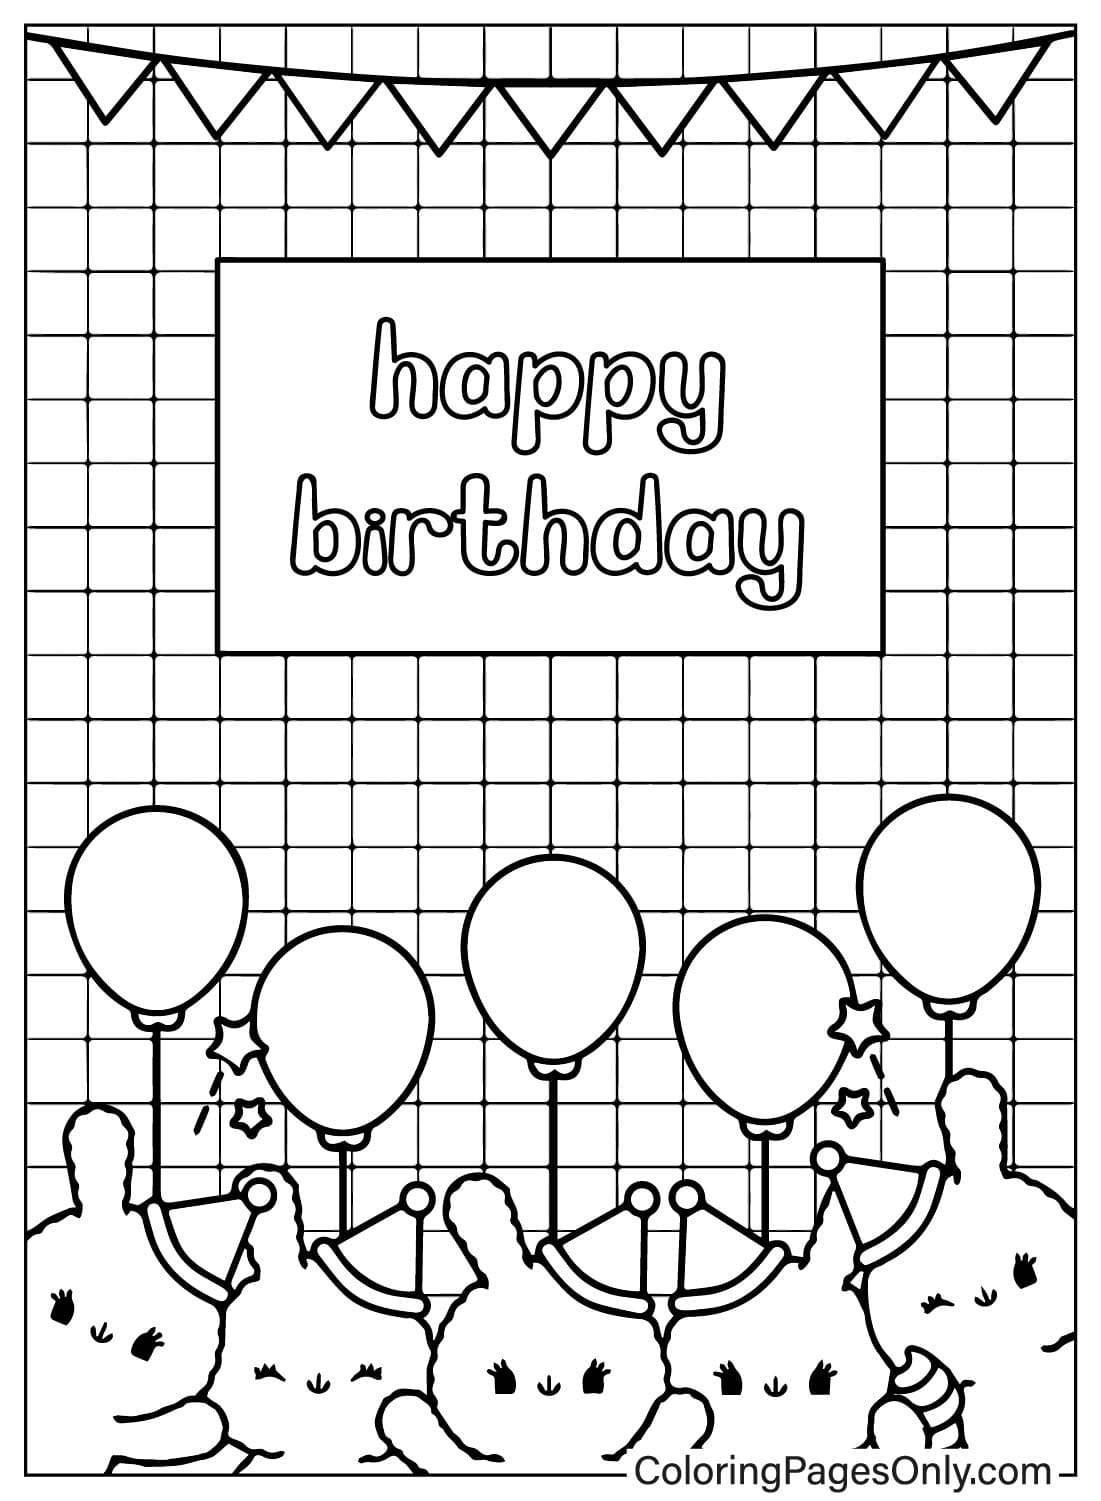 Página para colorir de cartão de feliz aniversário para impressão gratuita do cartão de feliz aniversário